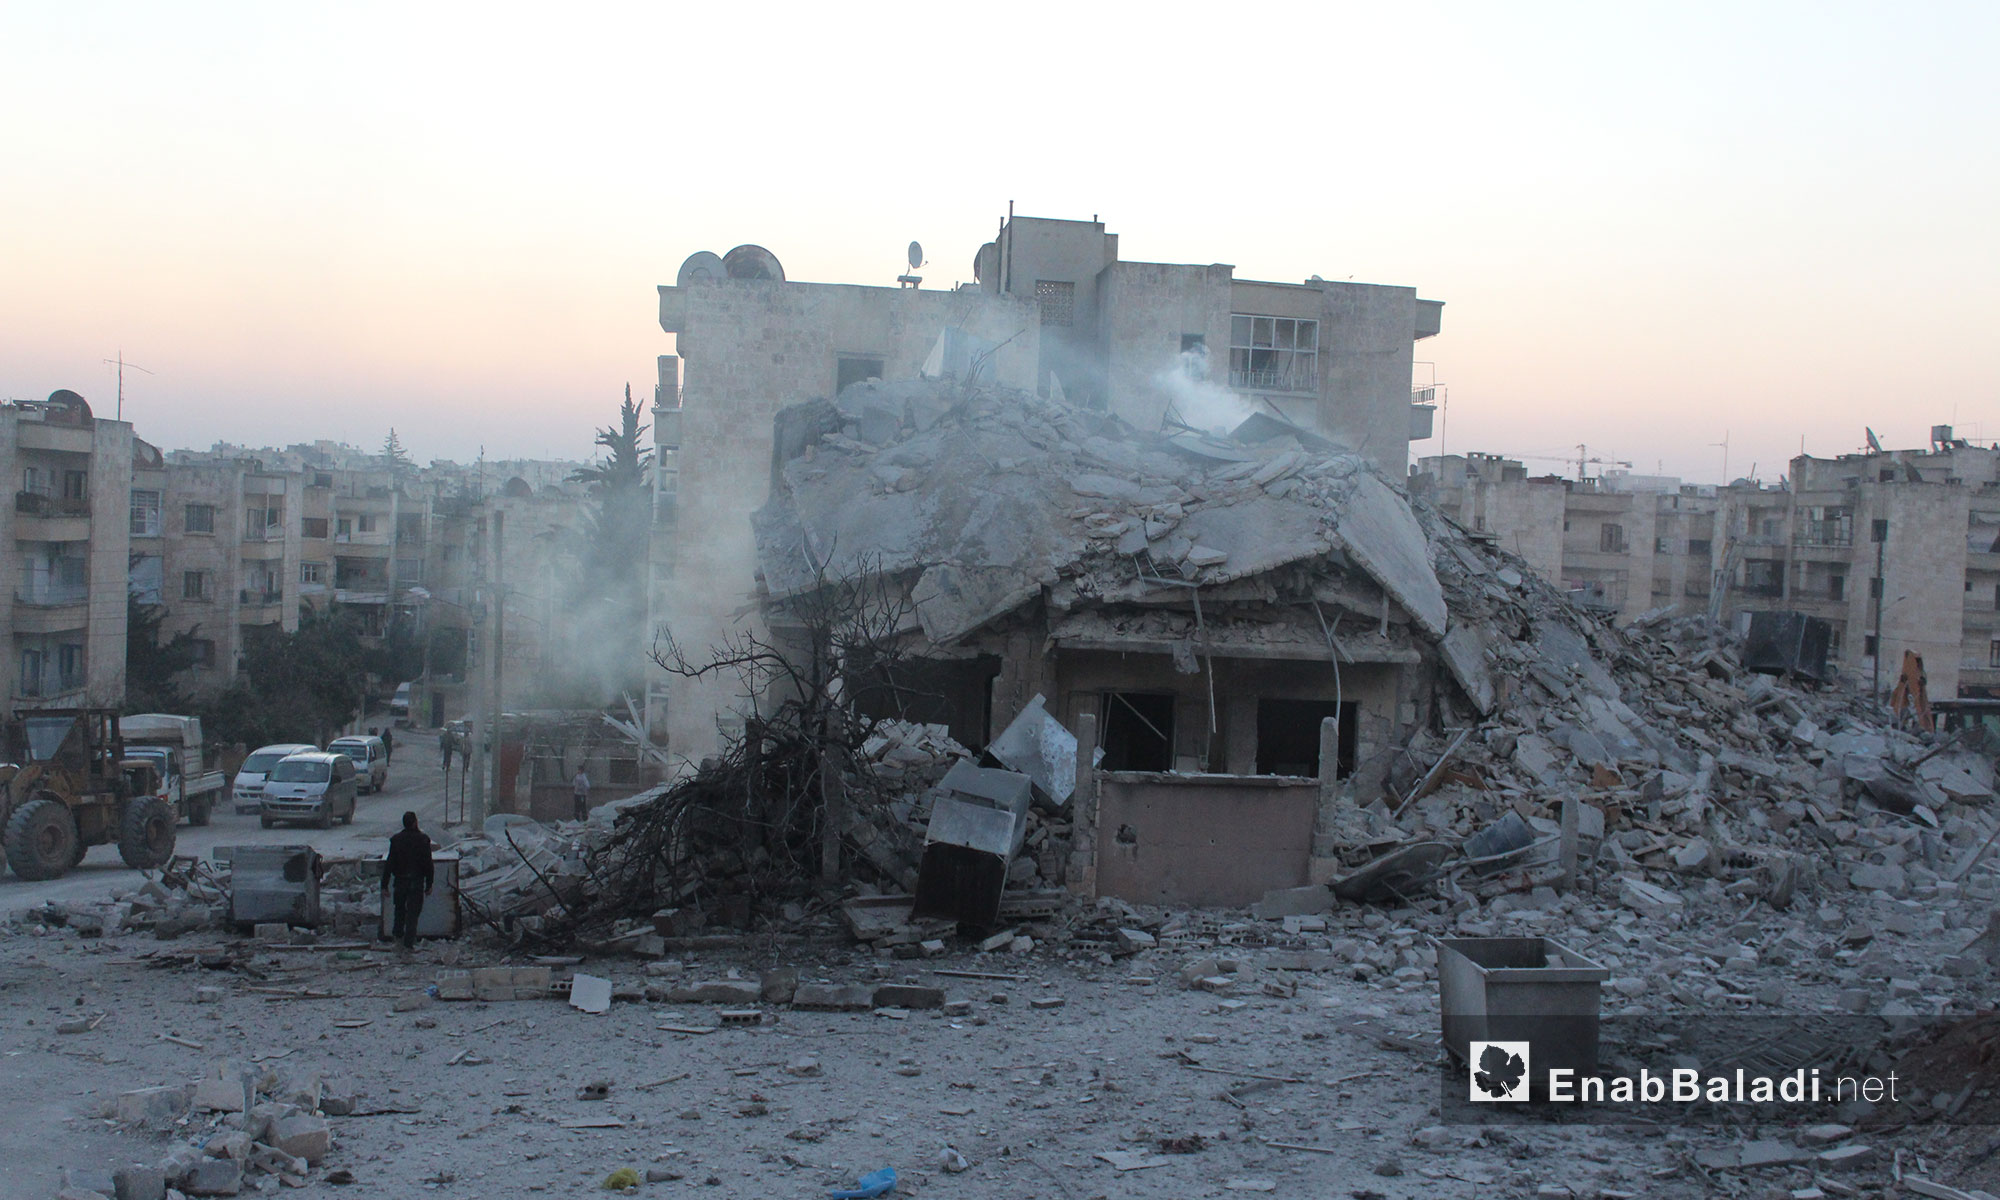 الدمار الذي لحق بالأحياء االسكنية جراء قصف الطيران الروسي والتحالف في إدلب - 7 شباط 2017 (عنب بلدي)